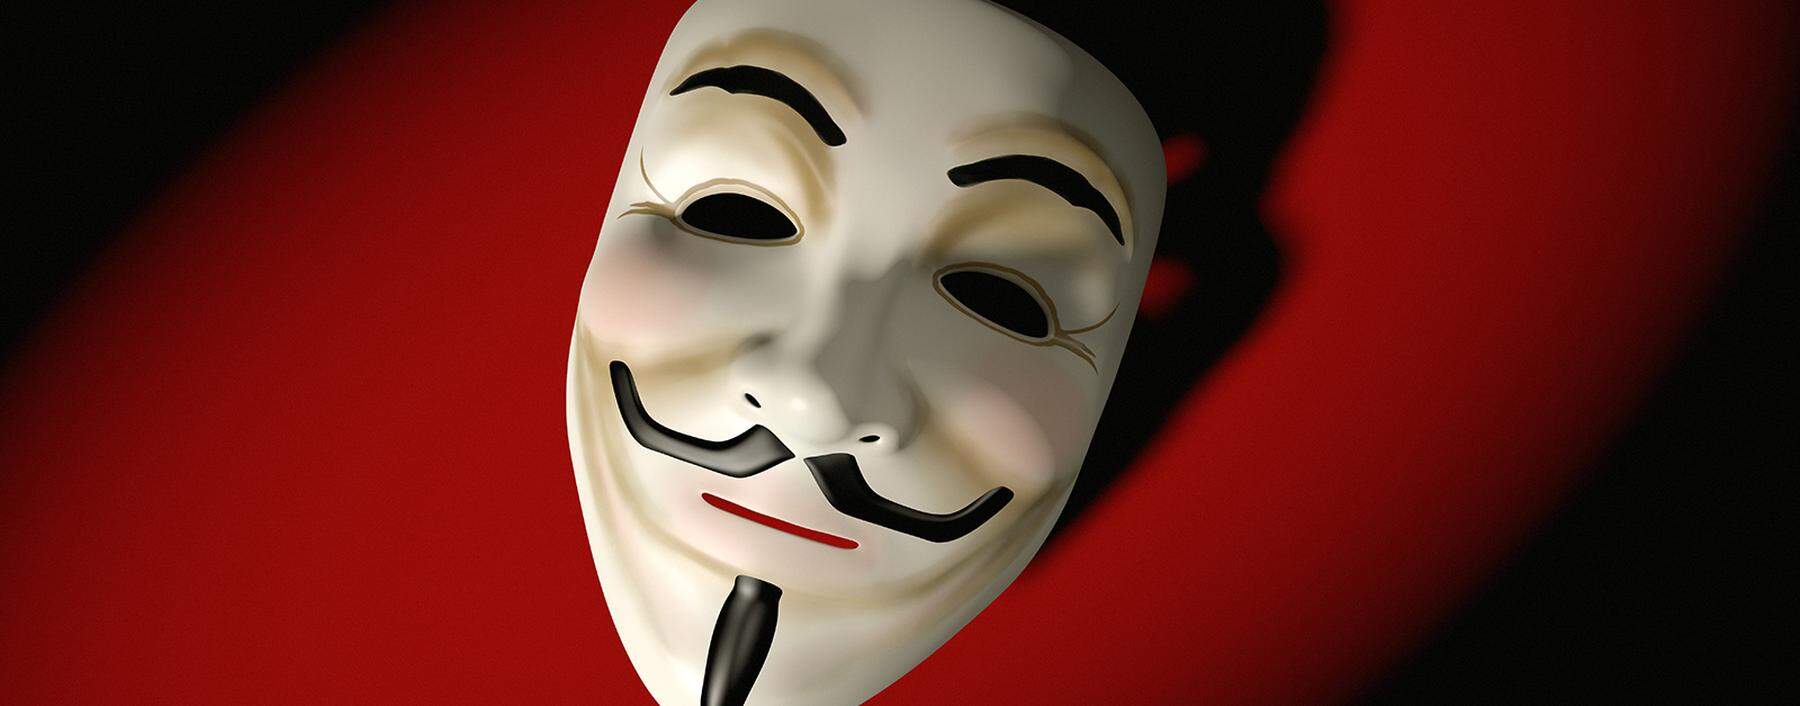 Aktivistische Hackergruppen wie Anonymousmit der charakteristischen Guy-Fawkes-Maske sind längst nicht mehr die Einzigen, die sich die Macht des Internets zunutze machen. Mehr und mehr Staaten entdecken das Netz als Waffe.